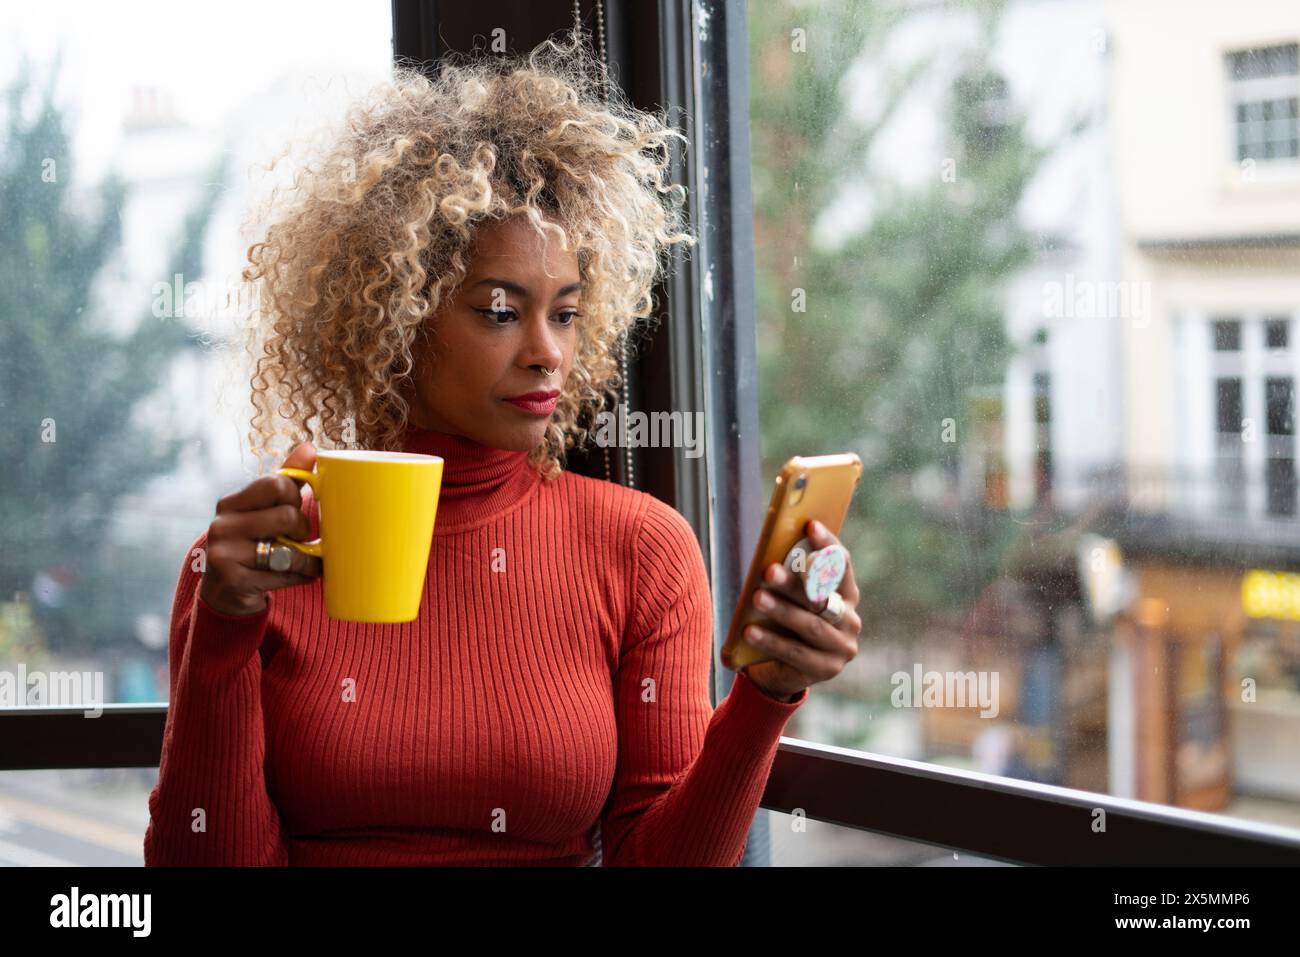 Frau, die einen Becher hält und ein Smartphone benutzt Stockfoto